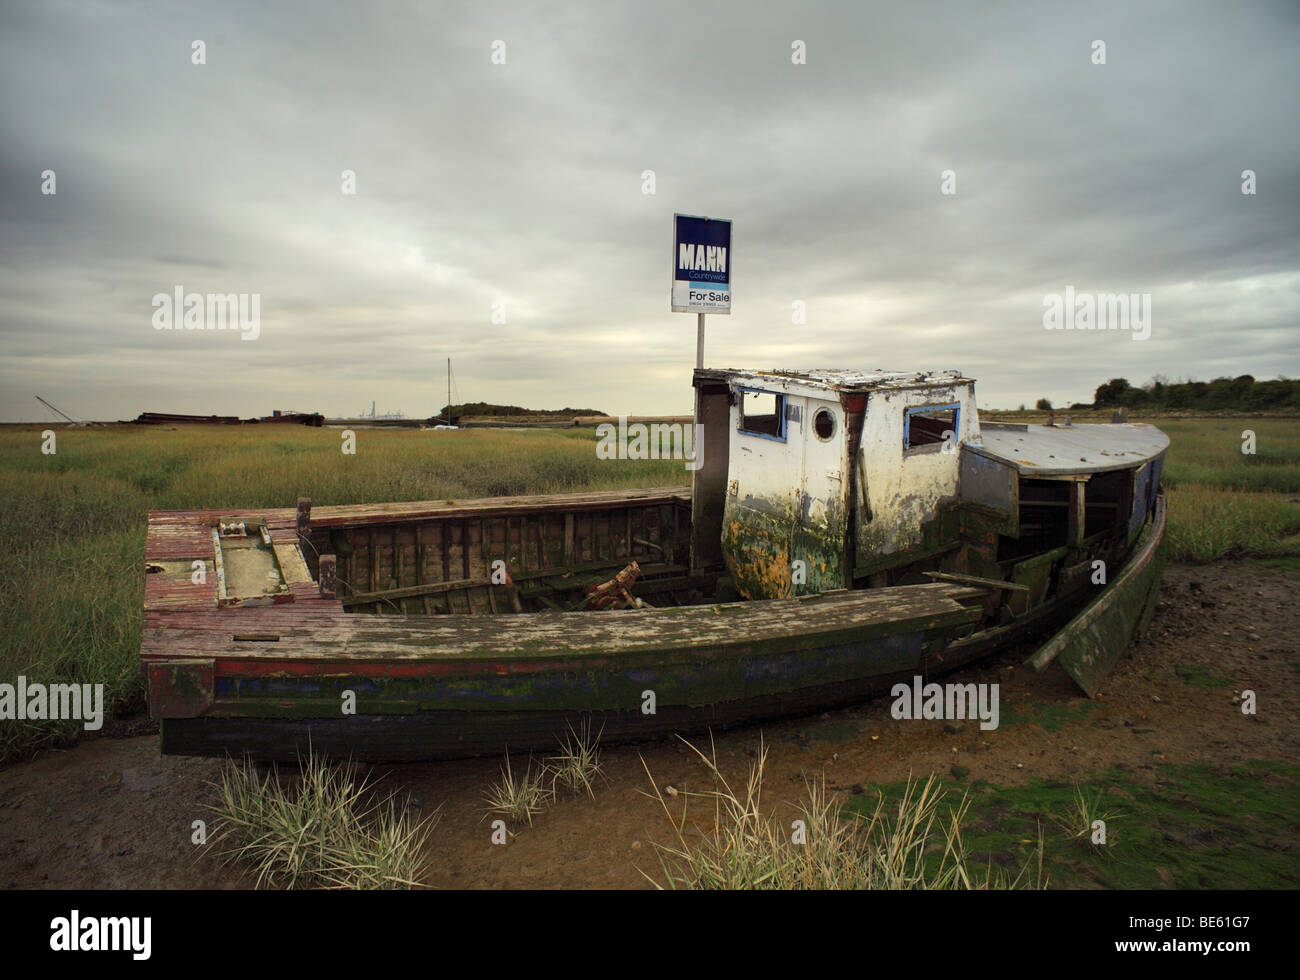 Abbandonata in barca per la vendita. Fiume Medway, Kent, Inghilterra, Regno Unito. Foto Stock